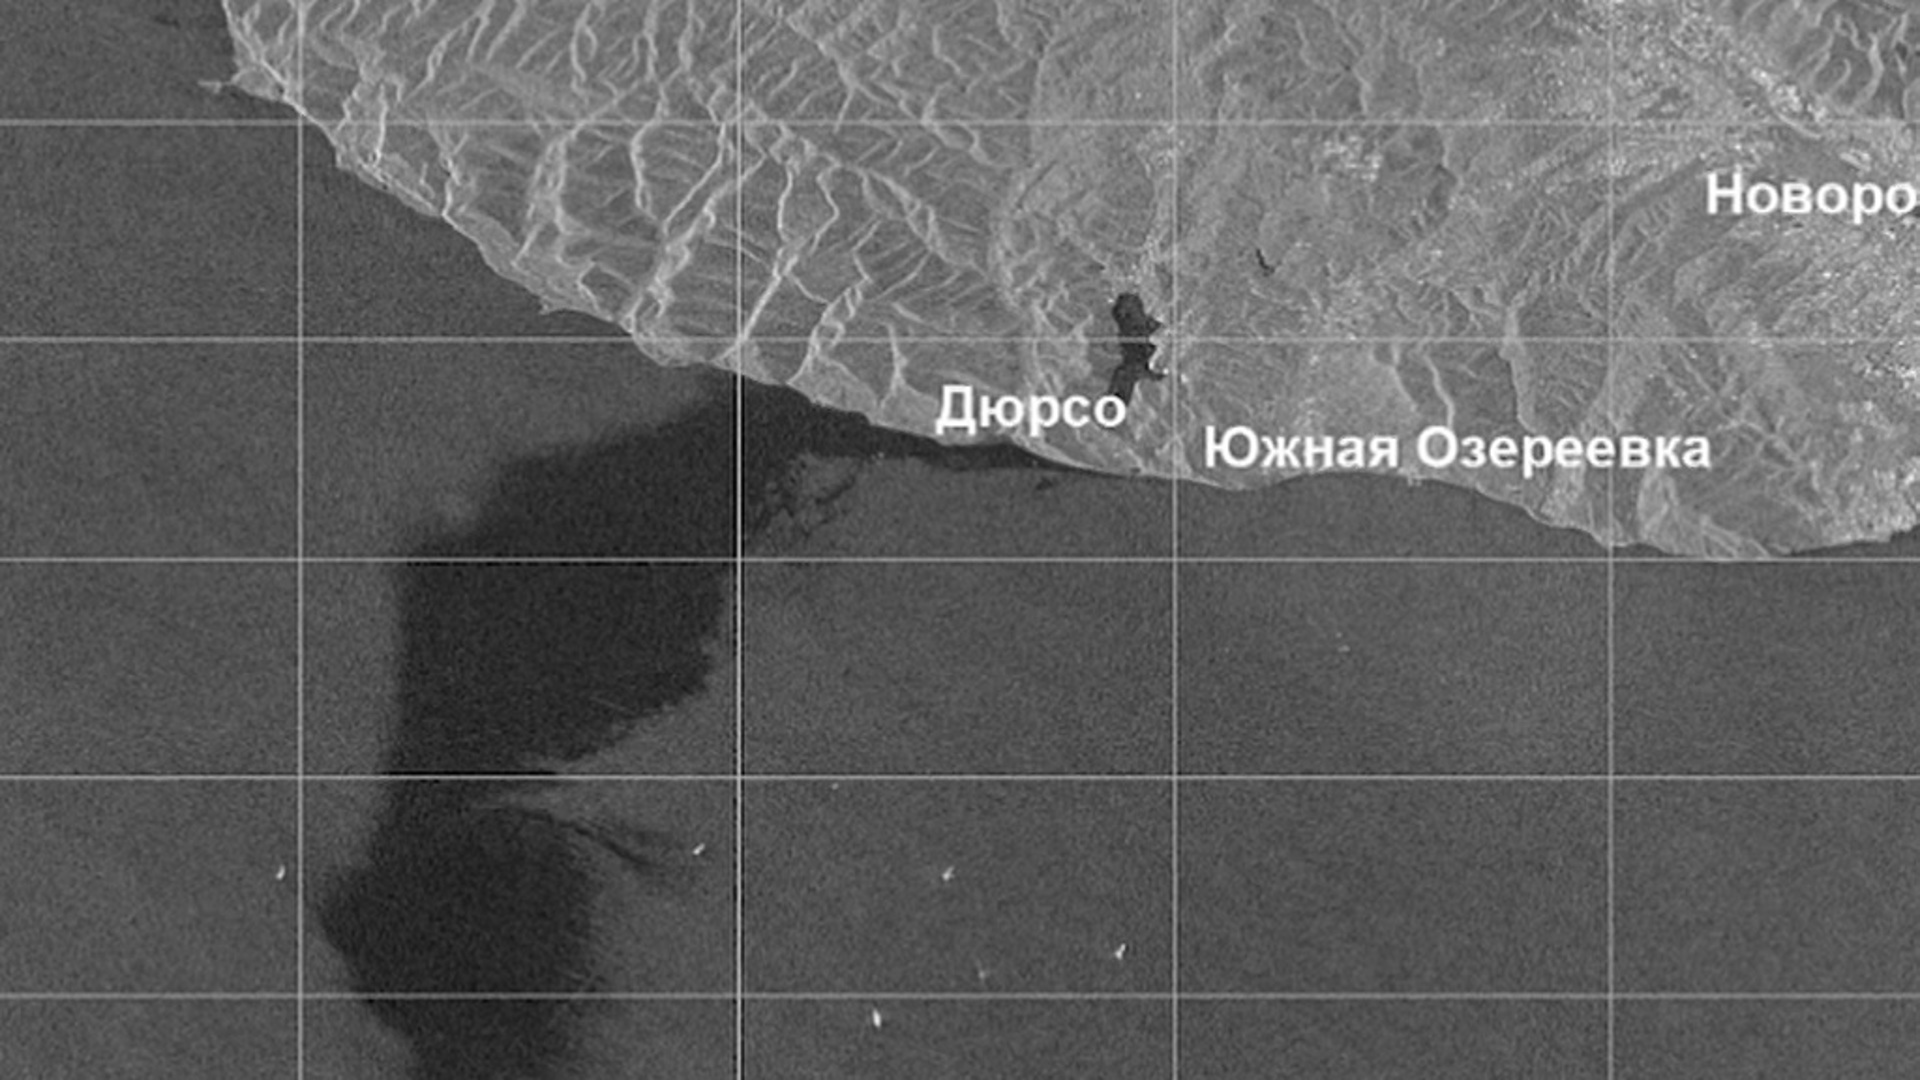 Снимок со спутника разлива нефти в Новороссийске